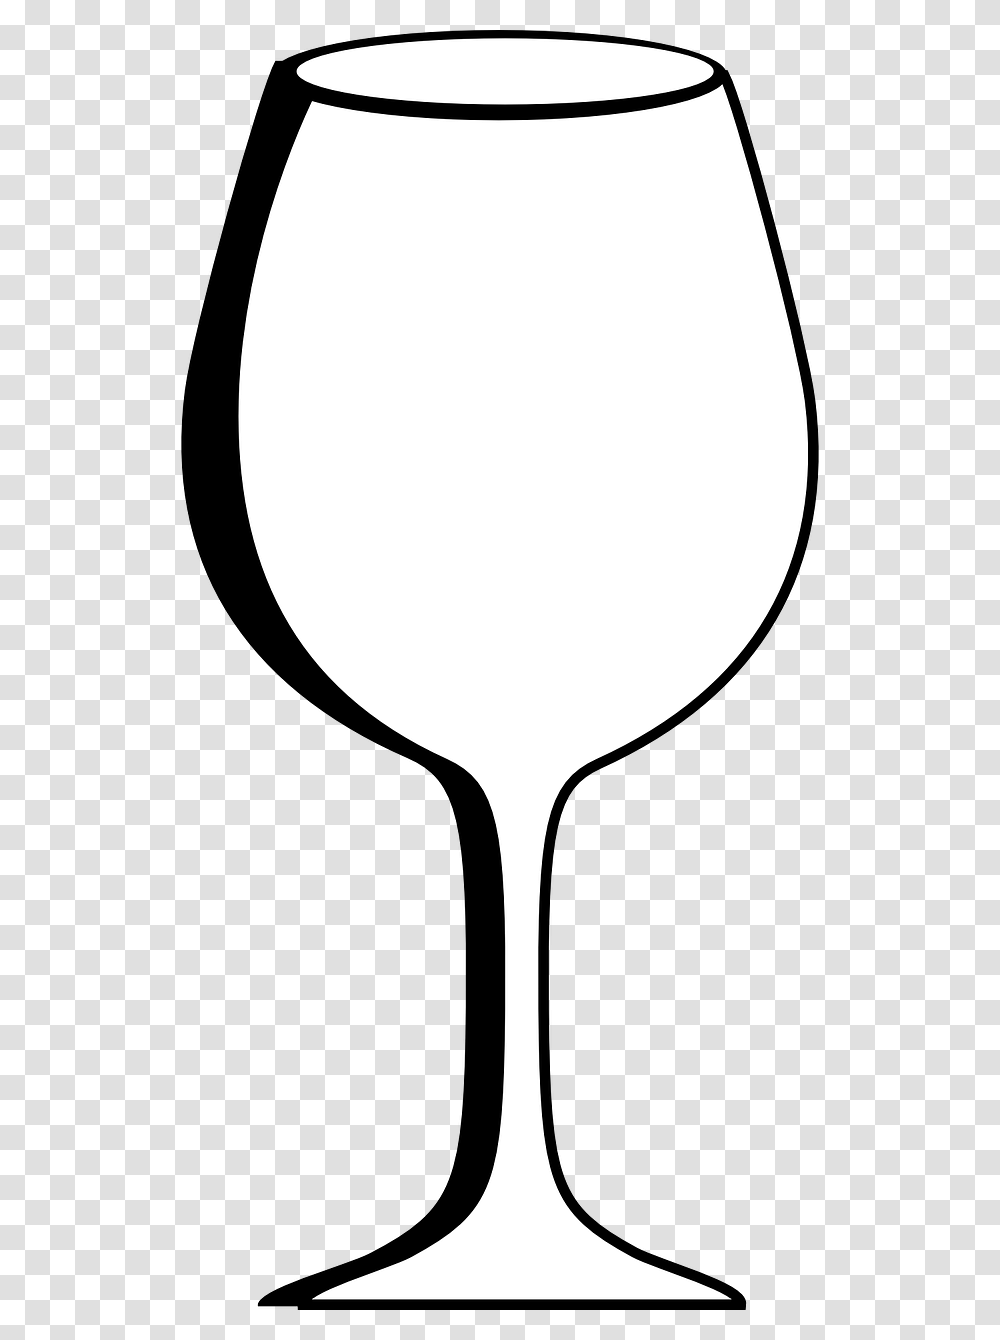 Verre De Vin Vide, Glass, Lamp, Goblet, Wine Glass Transparent Png